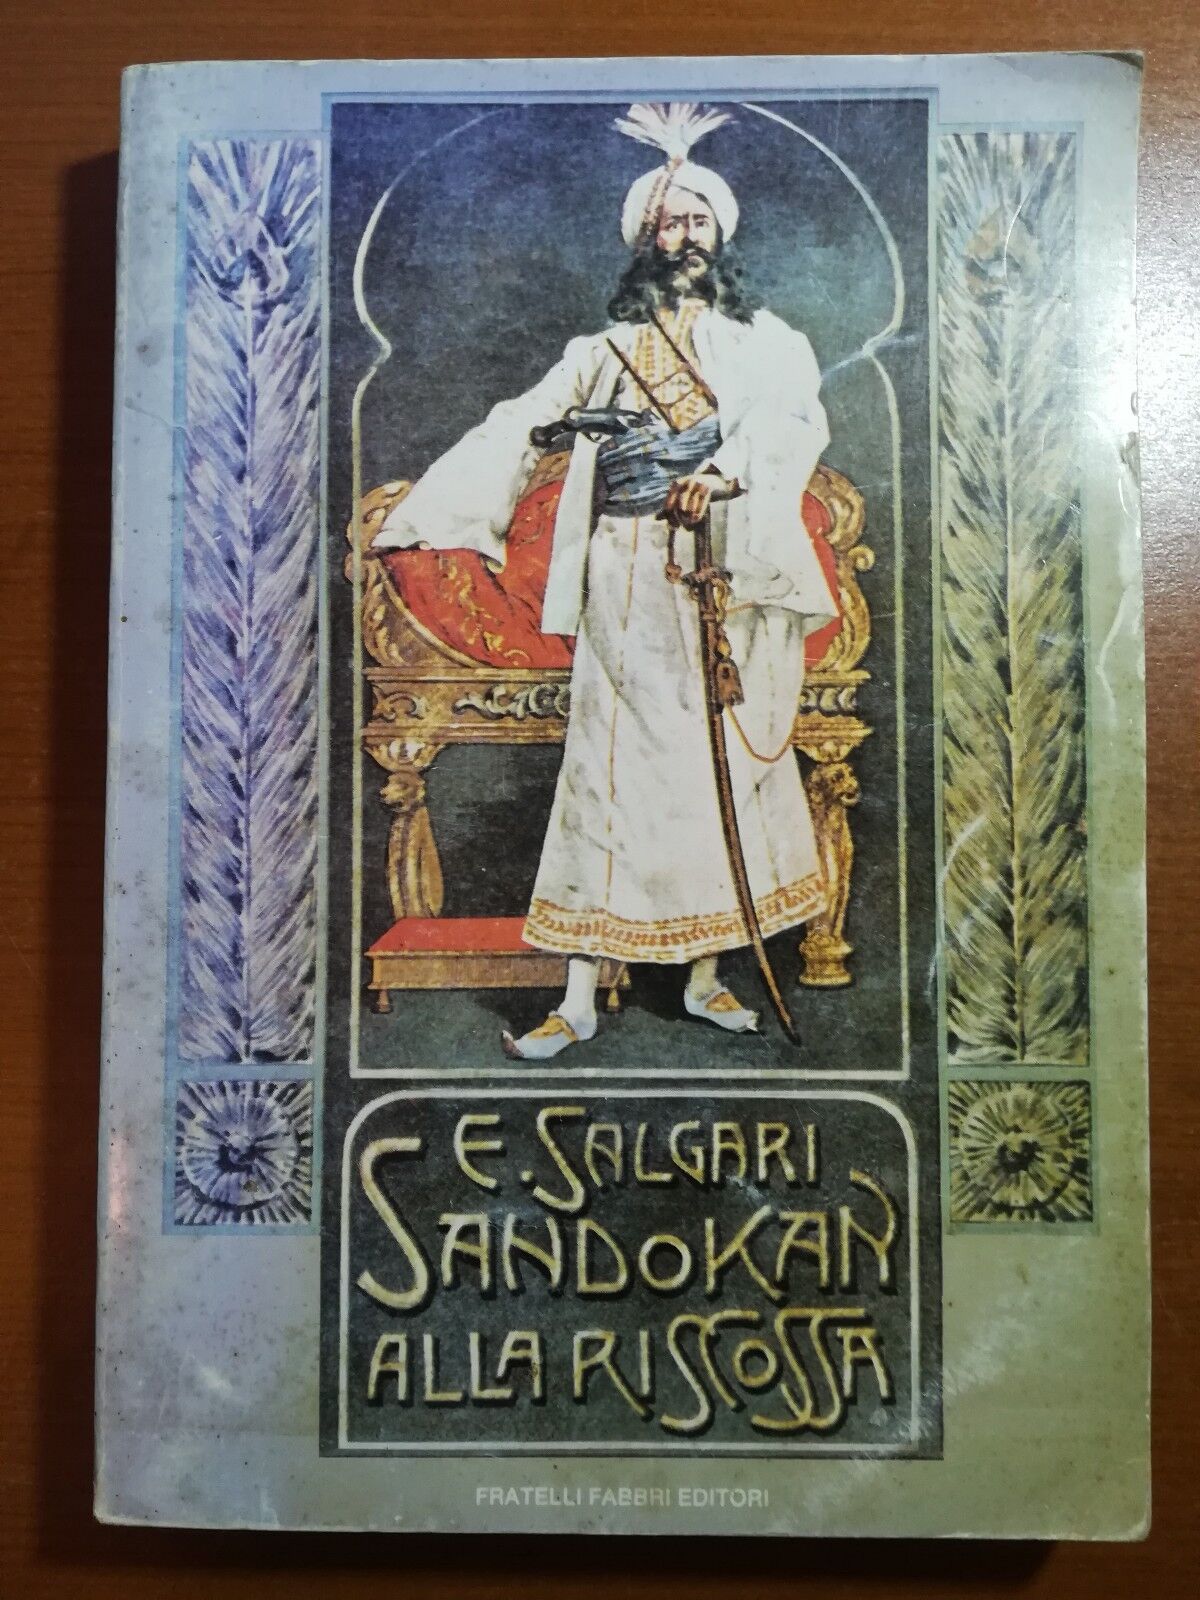 Sandokan alla riscossa - E. Salgari - Fabbri - 1979 - M